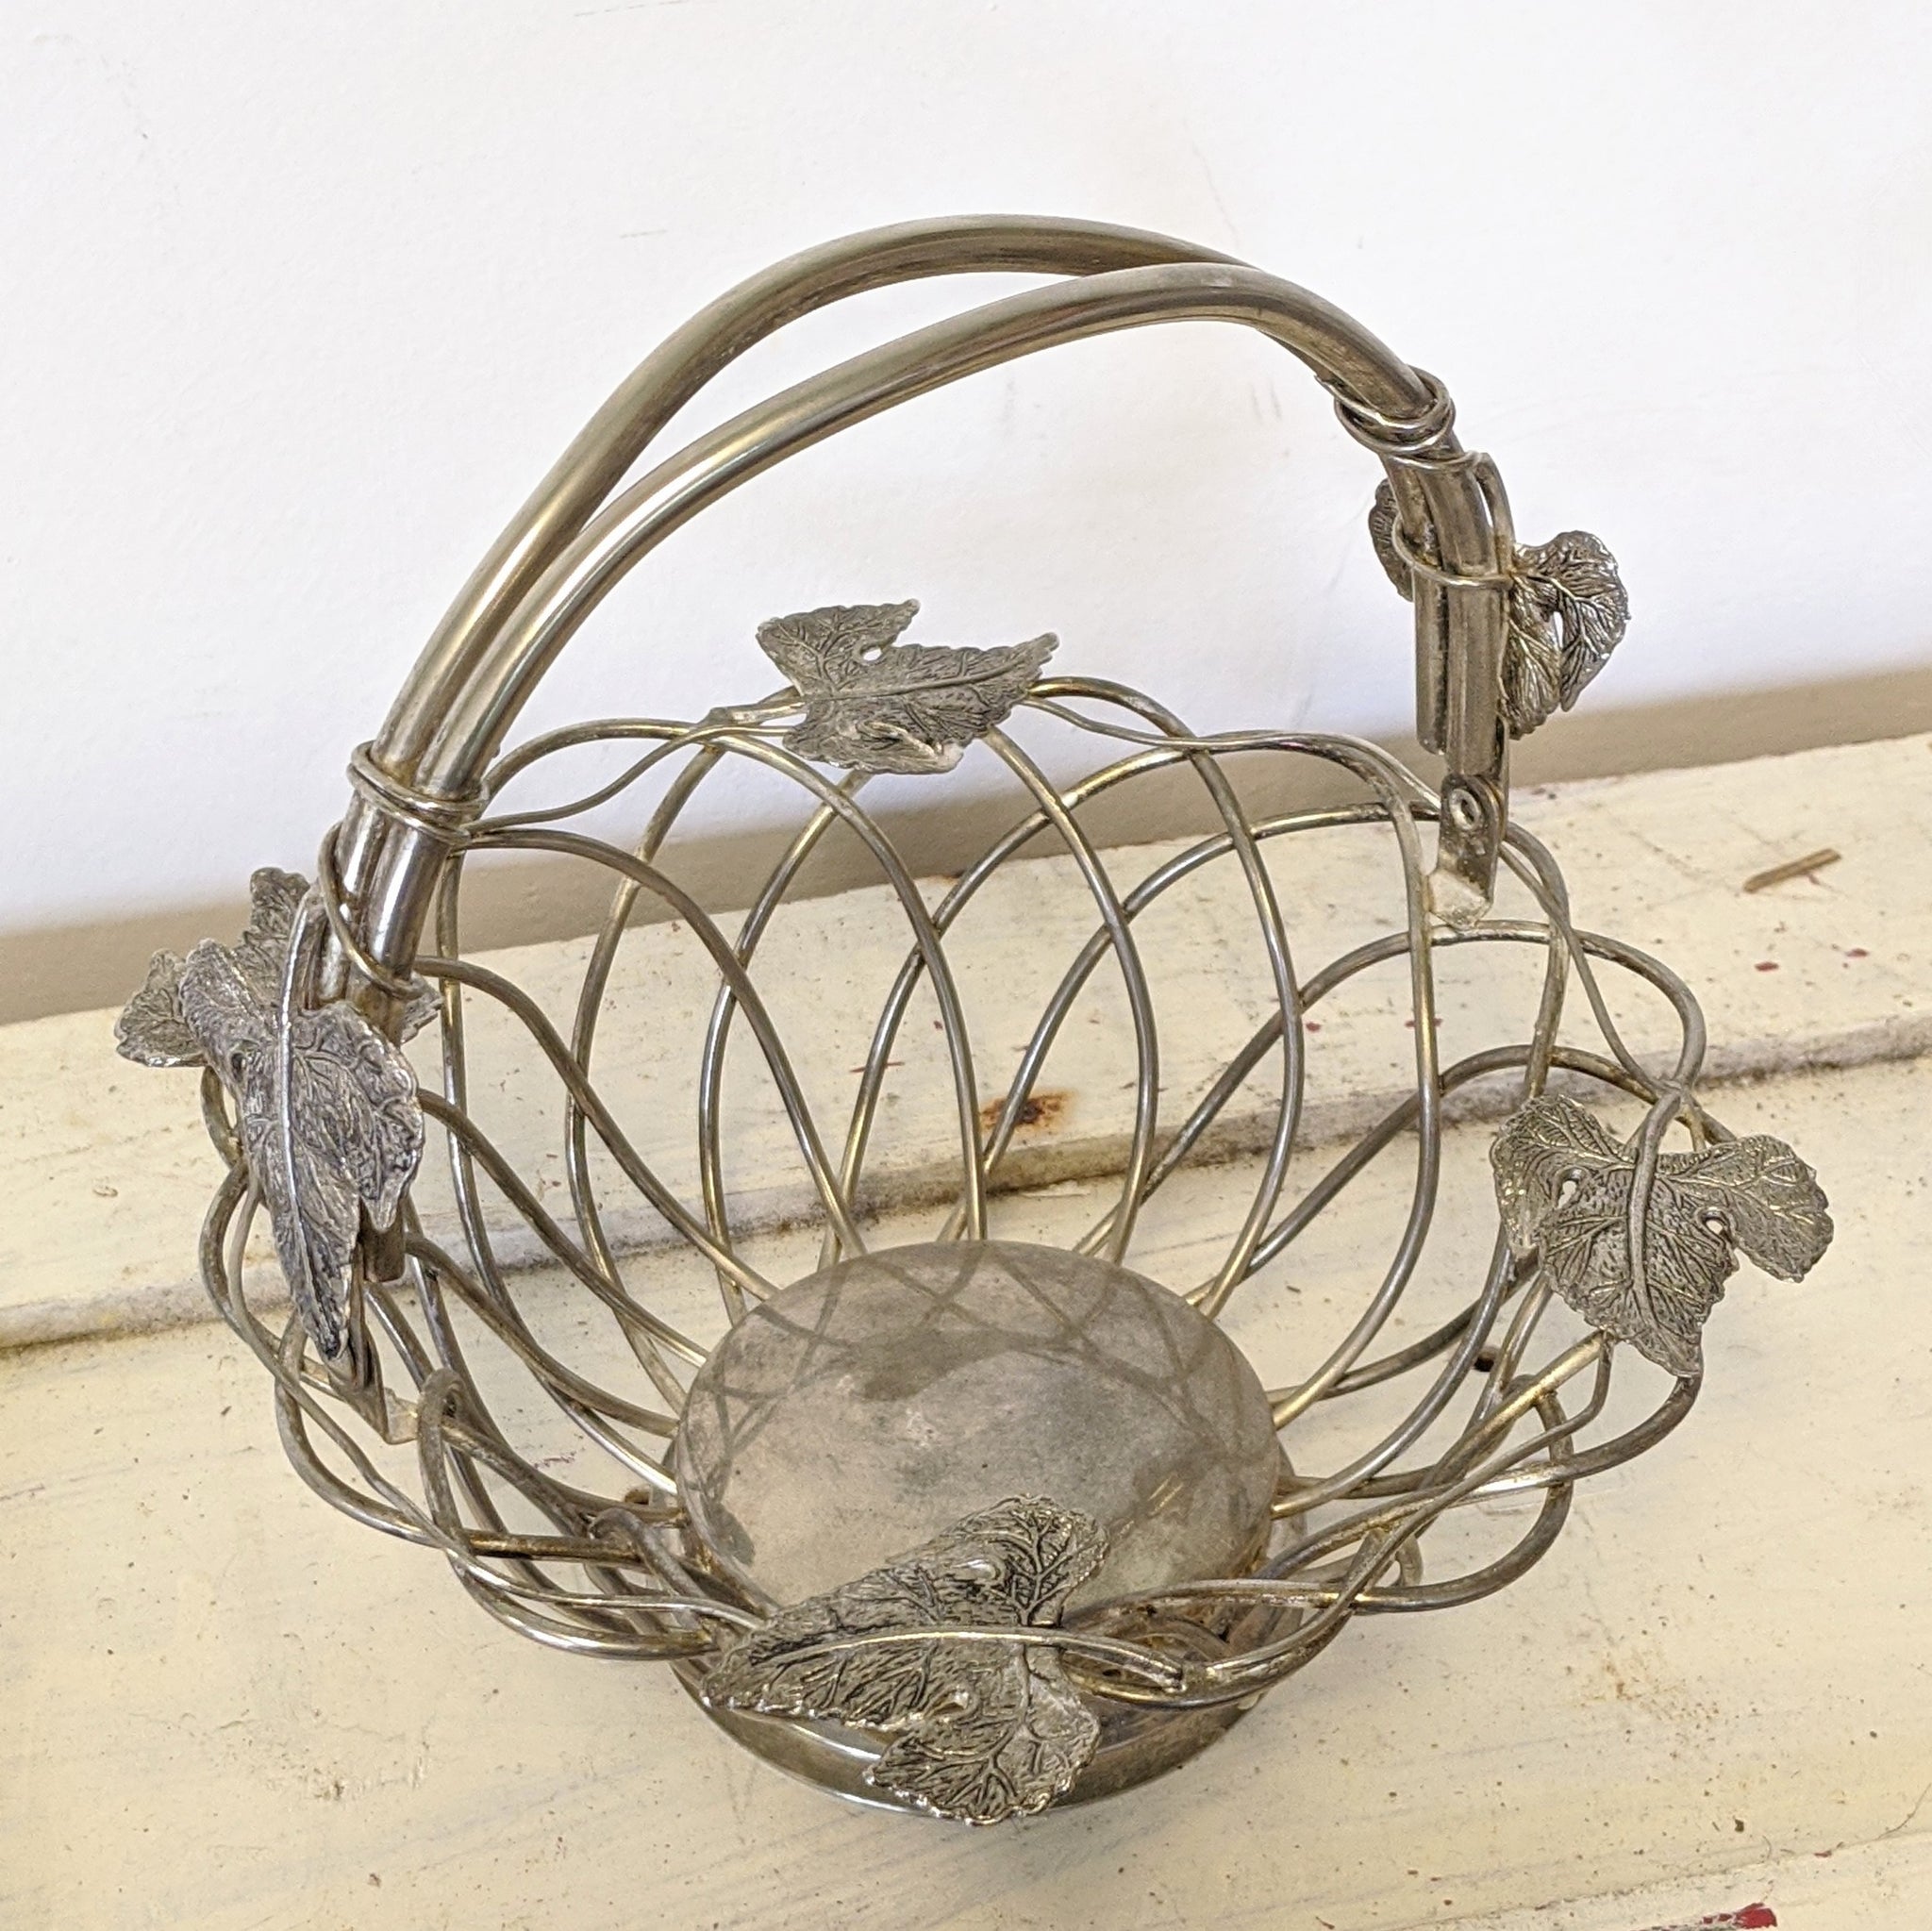 Vintage metal basket with leaves